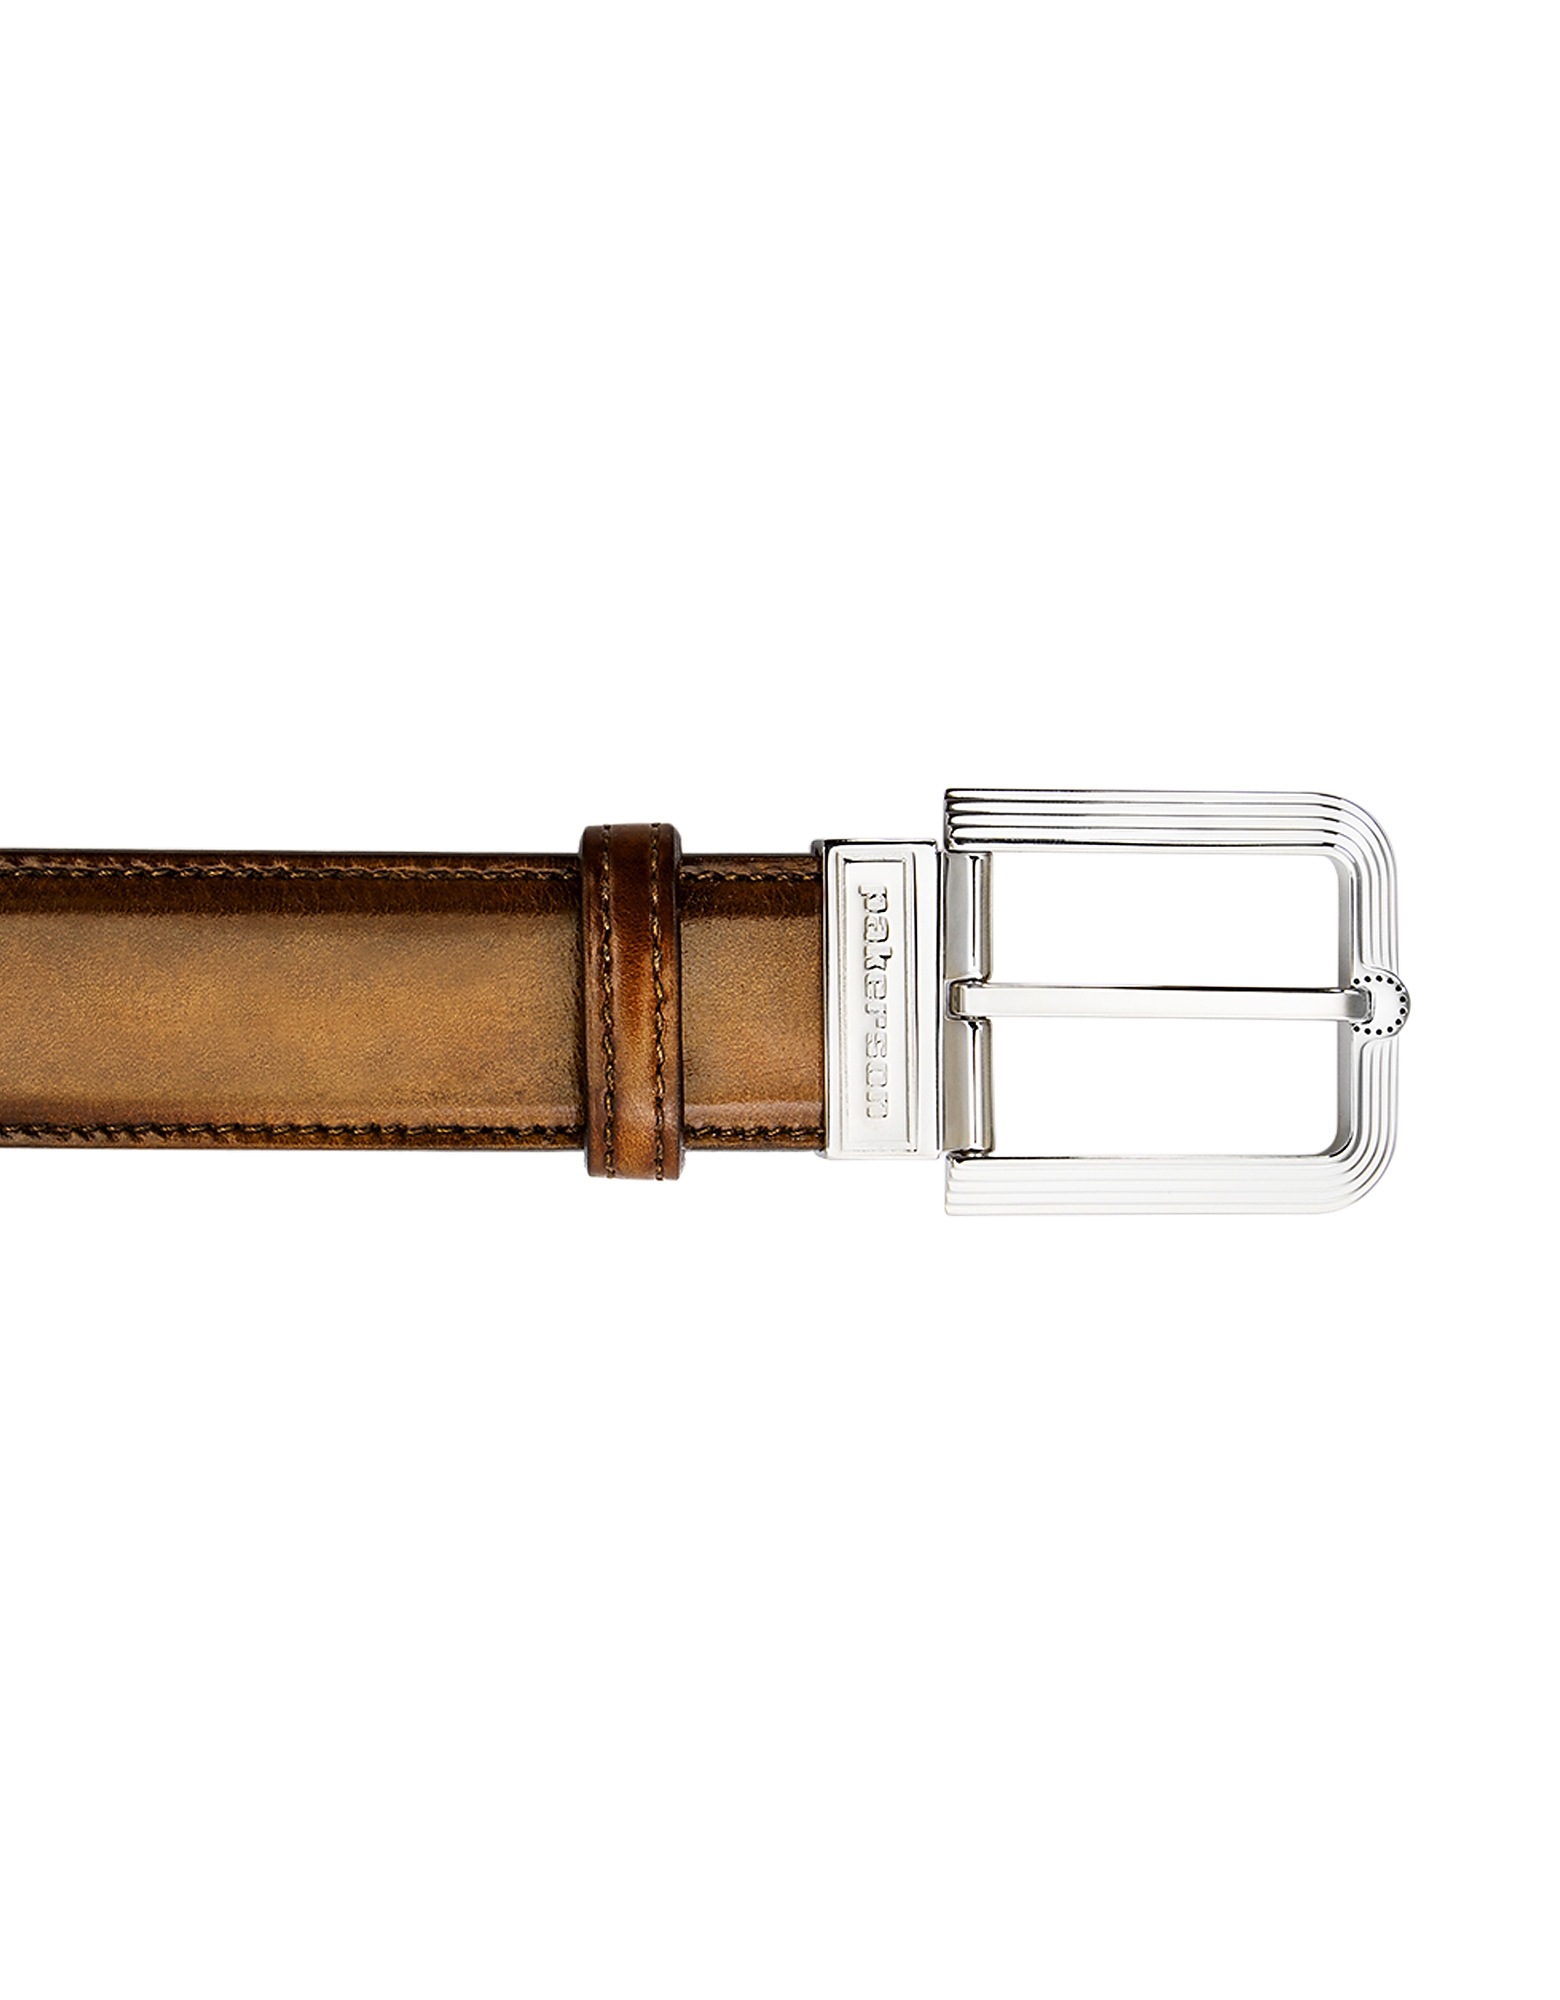 

Fiesole Timber Italian Leather Belt w/ Silver Buckle, Brown